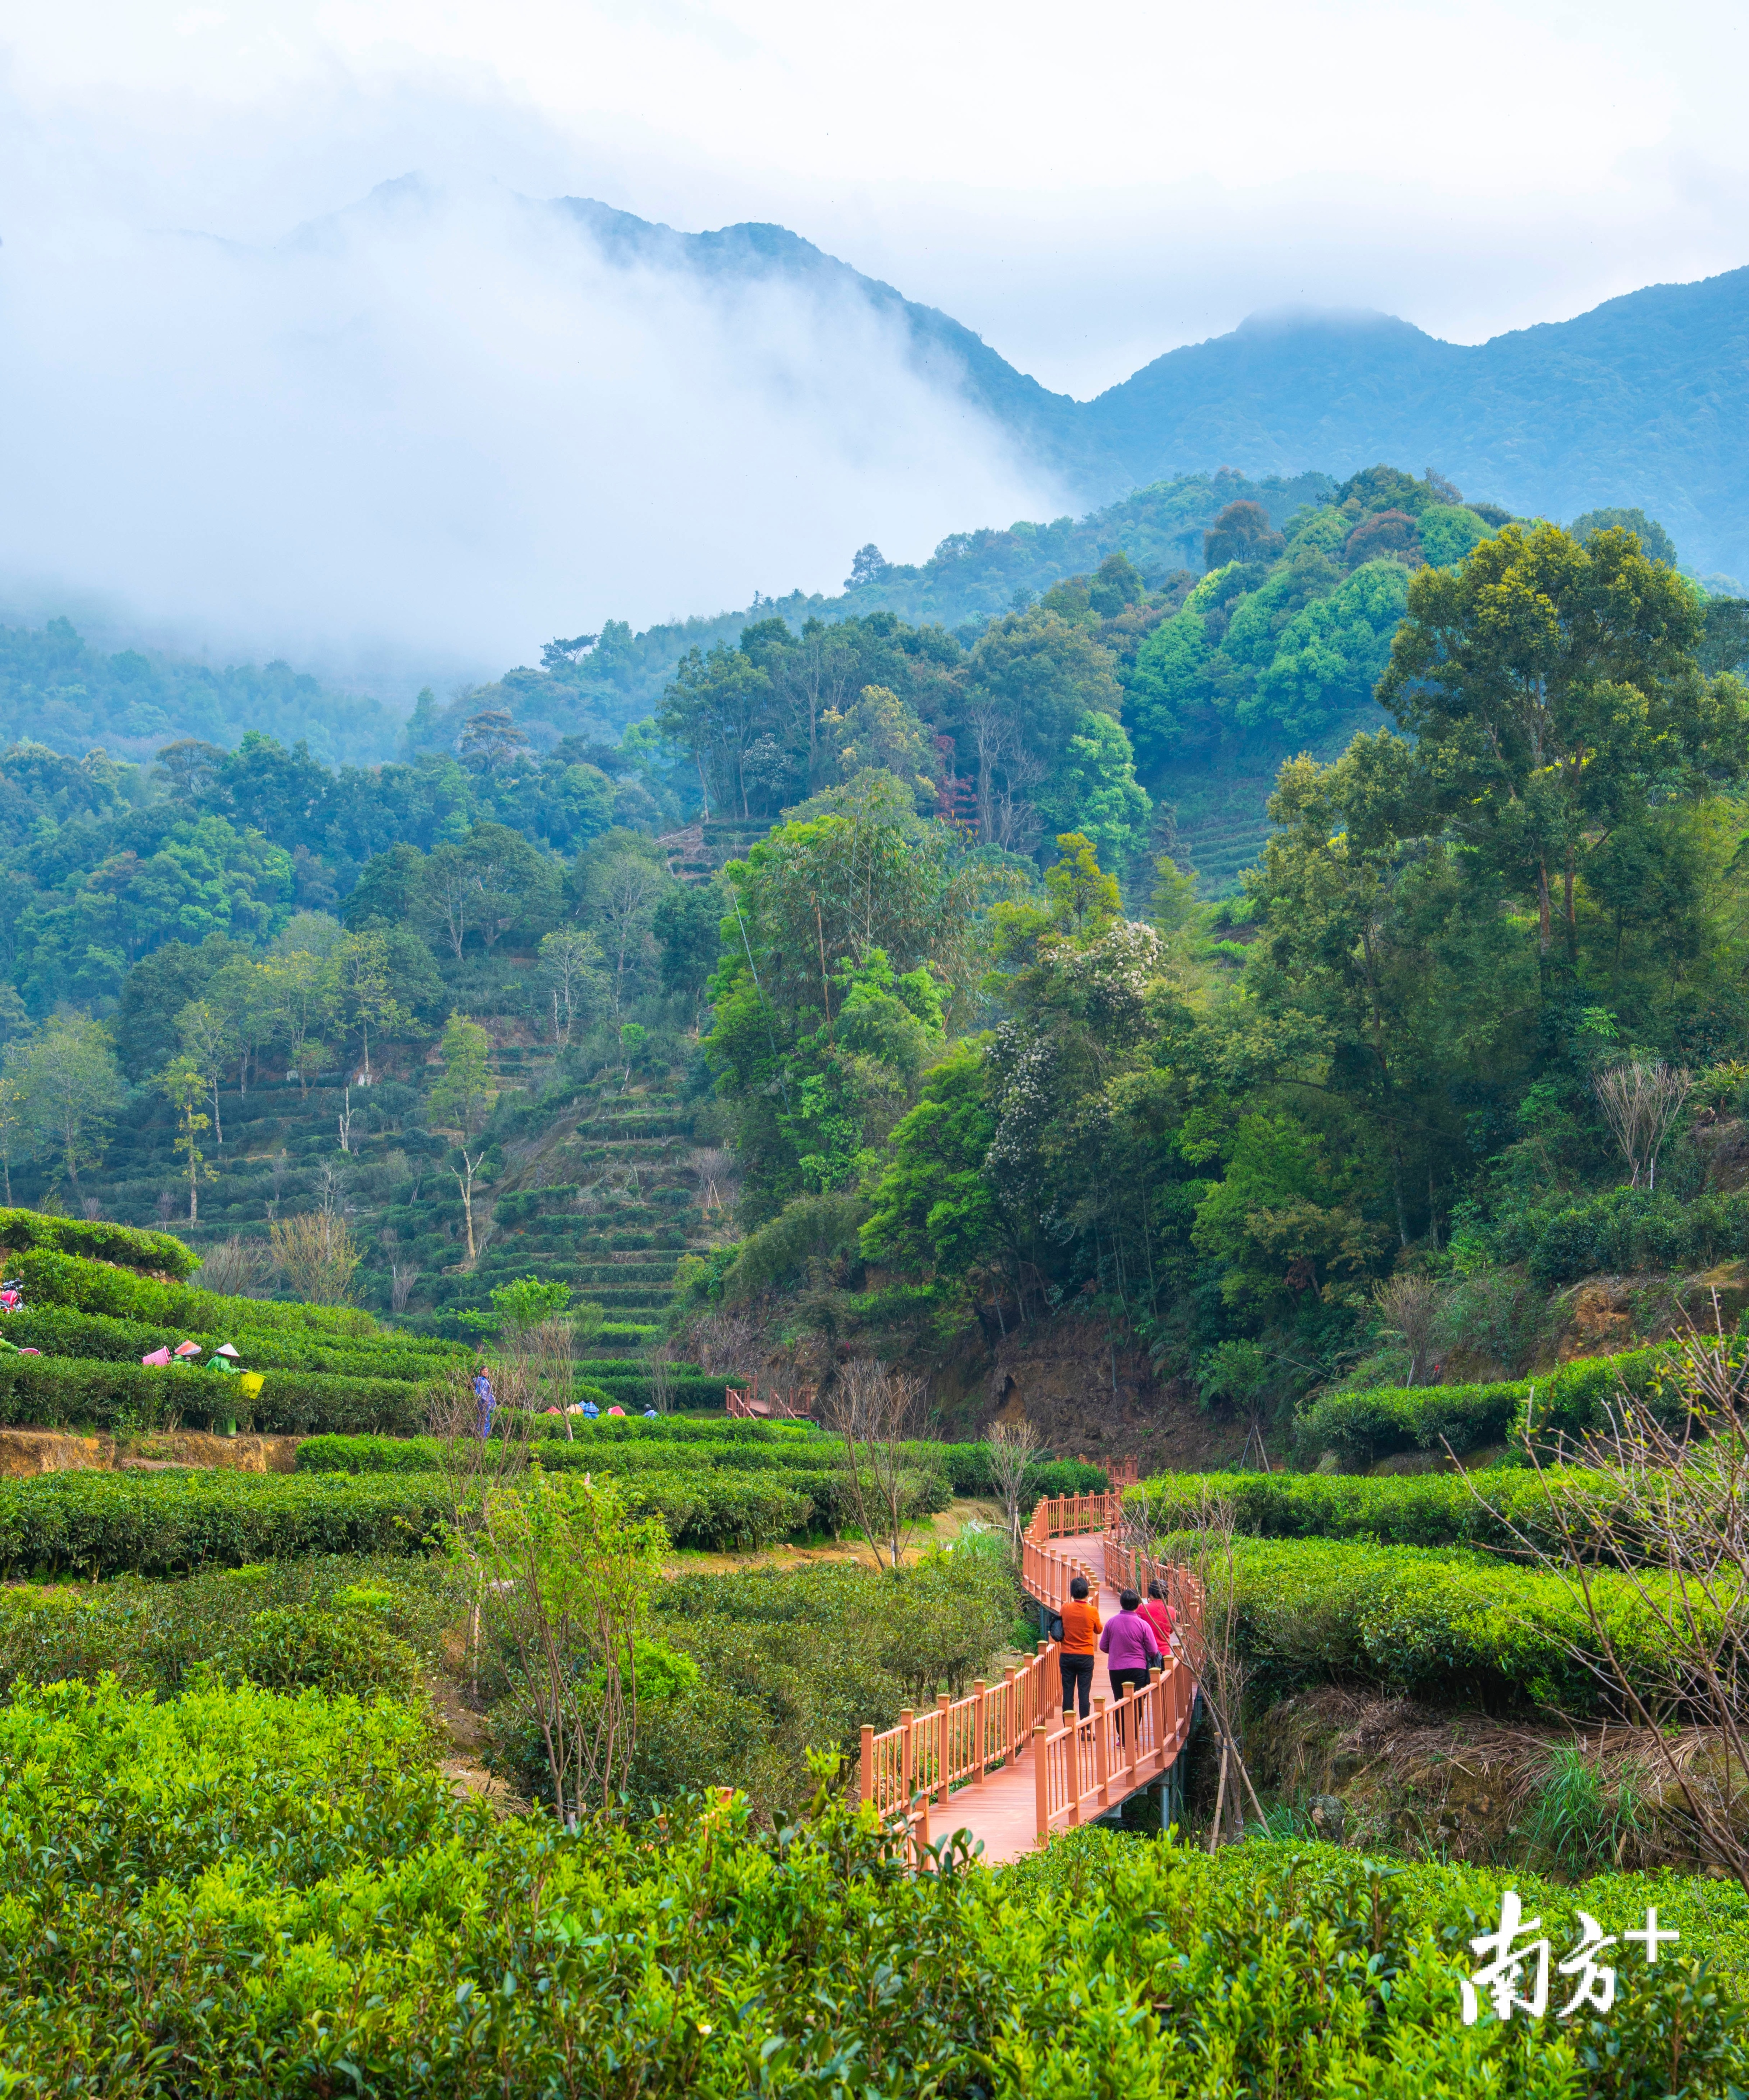 茶叶种植是潮安区一大特色农业。